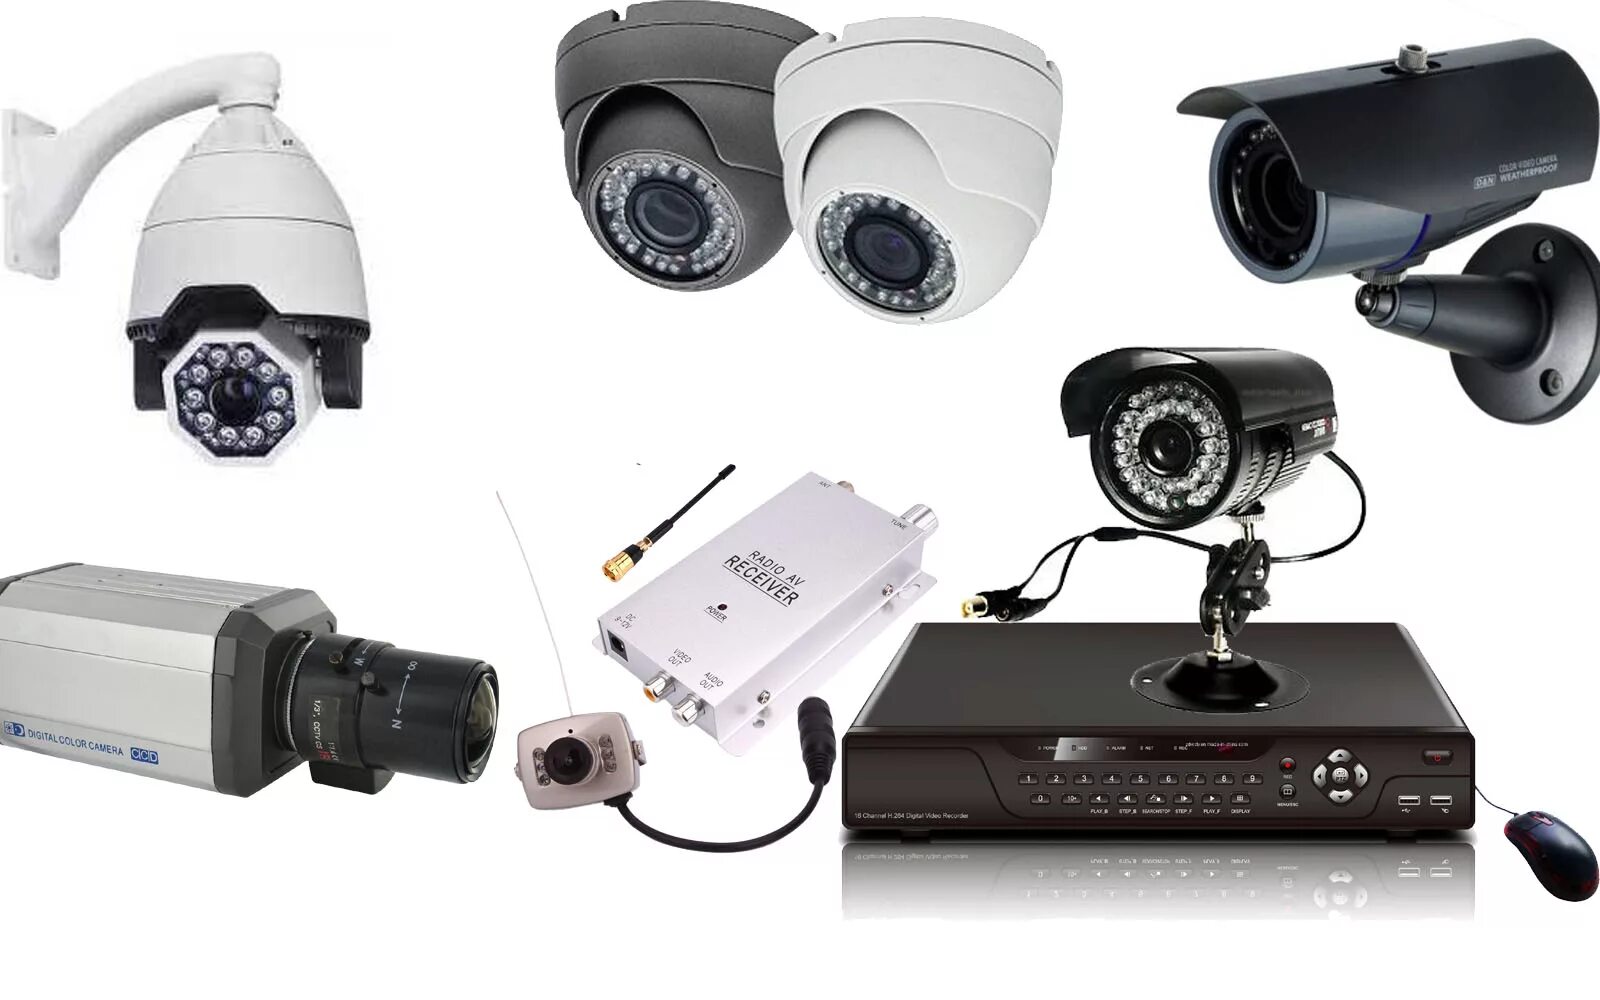 Камера для ноутбука купить. Камеры CCTV Surveillance System. Камера CCTV ACECOP ACV 100afzt. Камера CCTV ACECOP ACV 602dnrt. Камера для видеонаблюдения Camera Spector Hdv-04-24.